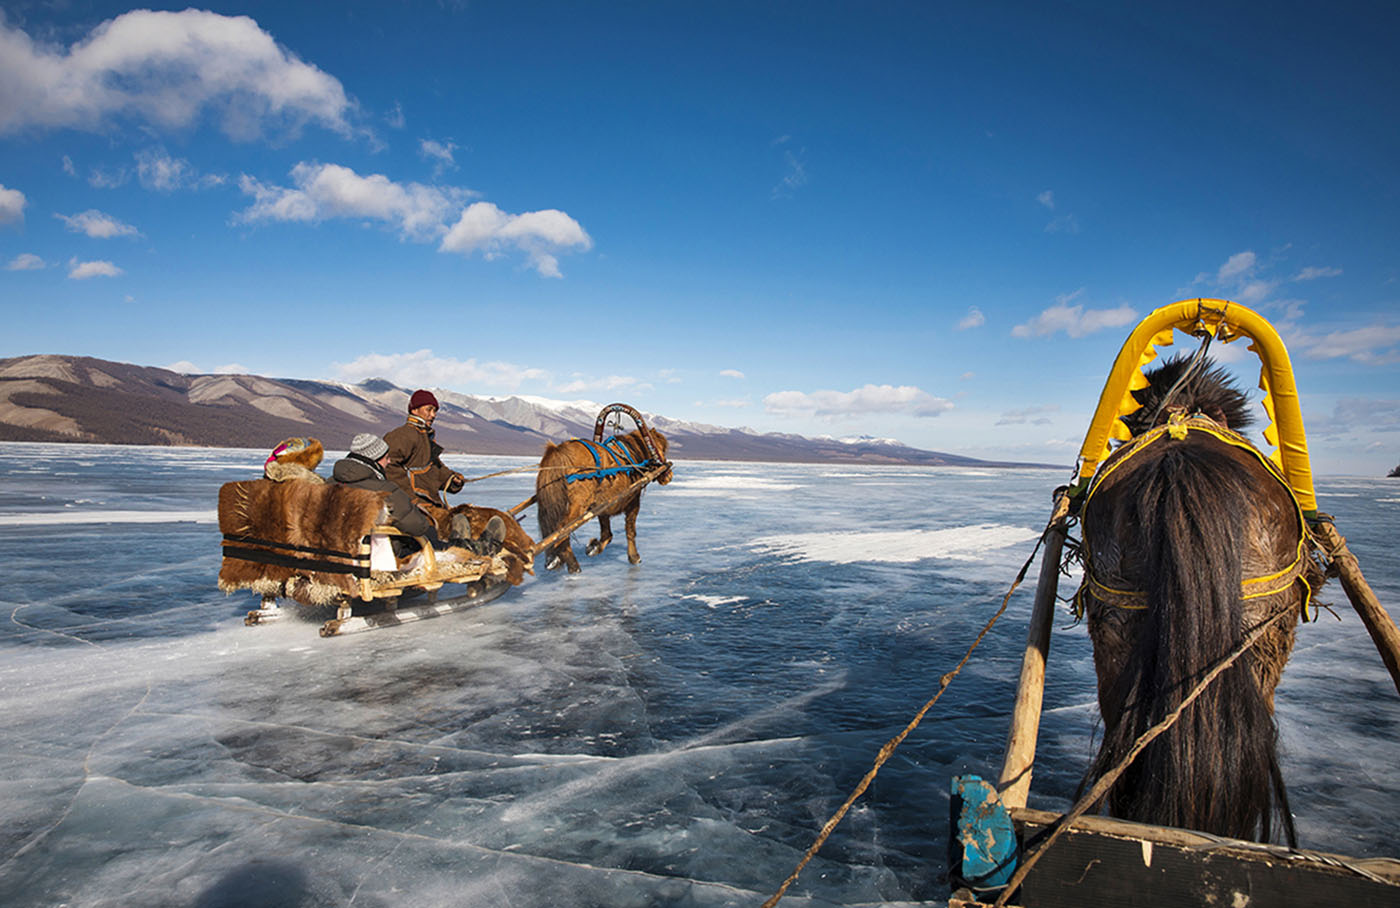 Festival des glaces - Traîneau à cheval sur le lac Khövsgöl - Mongolie